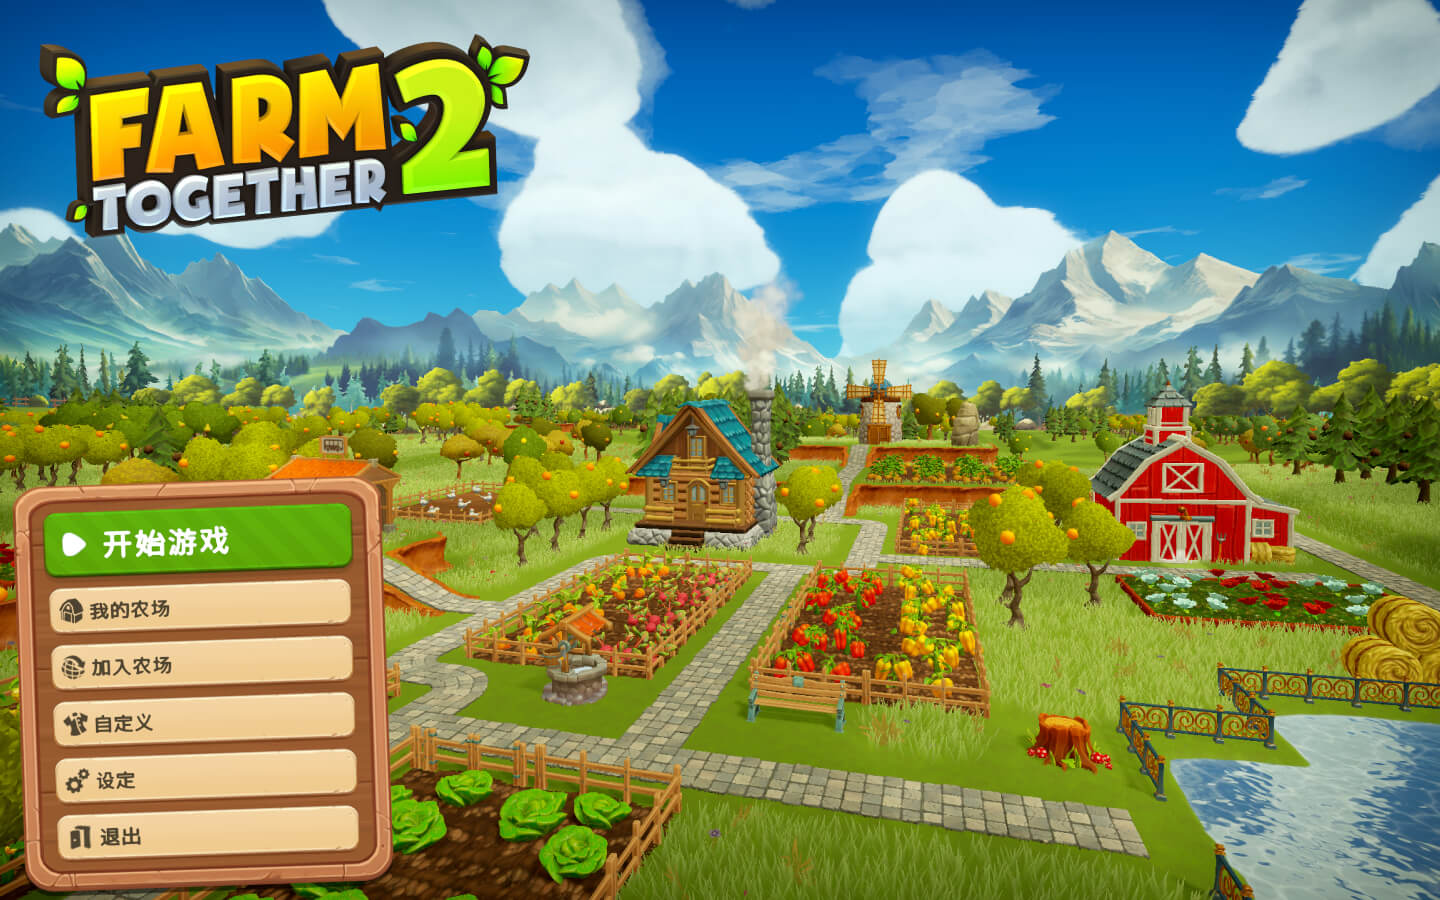 一起玩农场2 Farm Together 2 for Mac v1.0.0 中文原生版-1